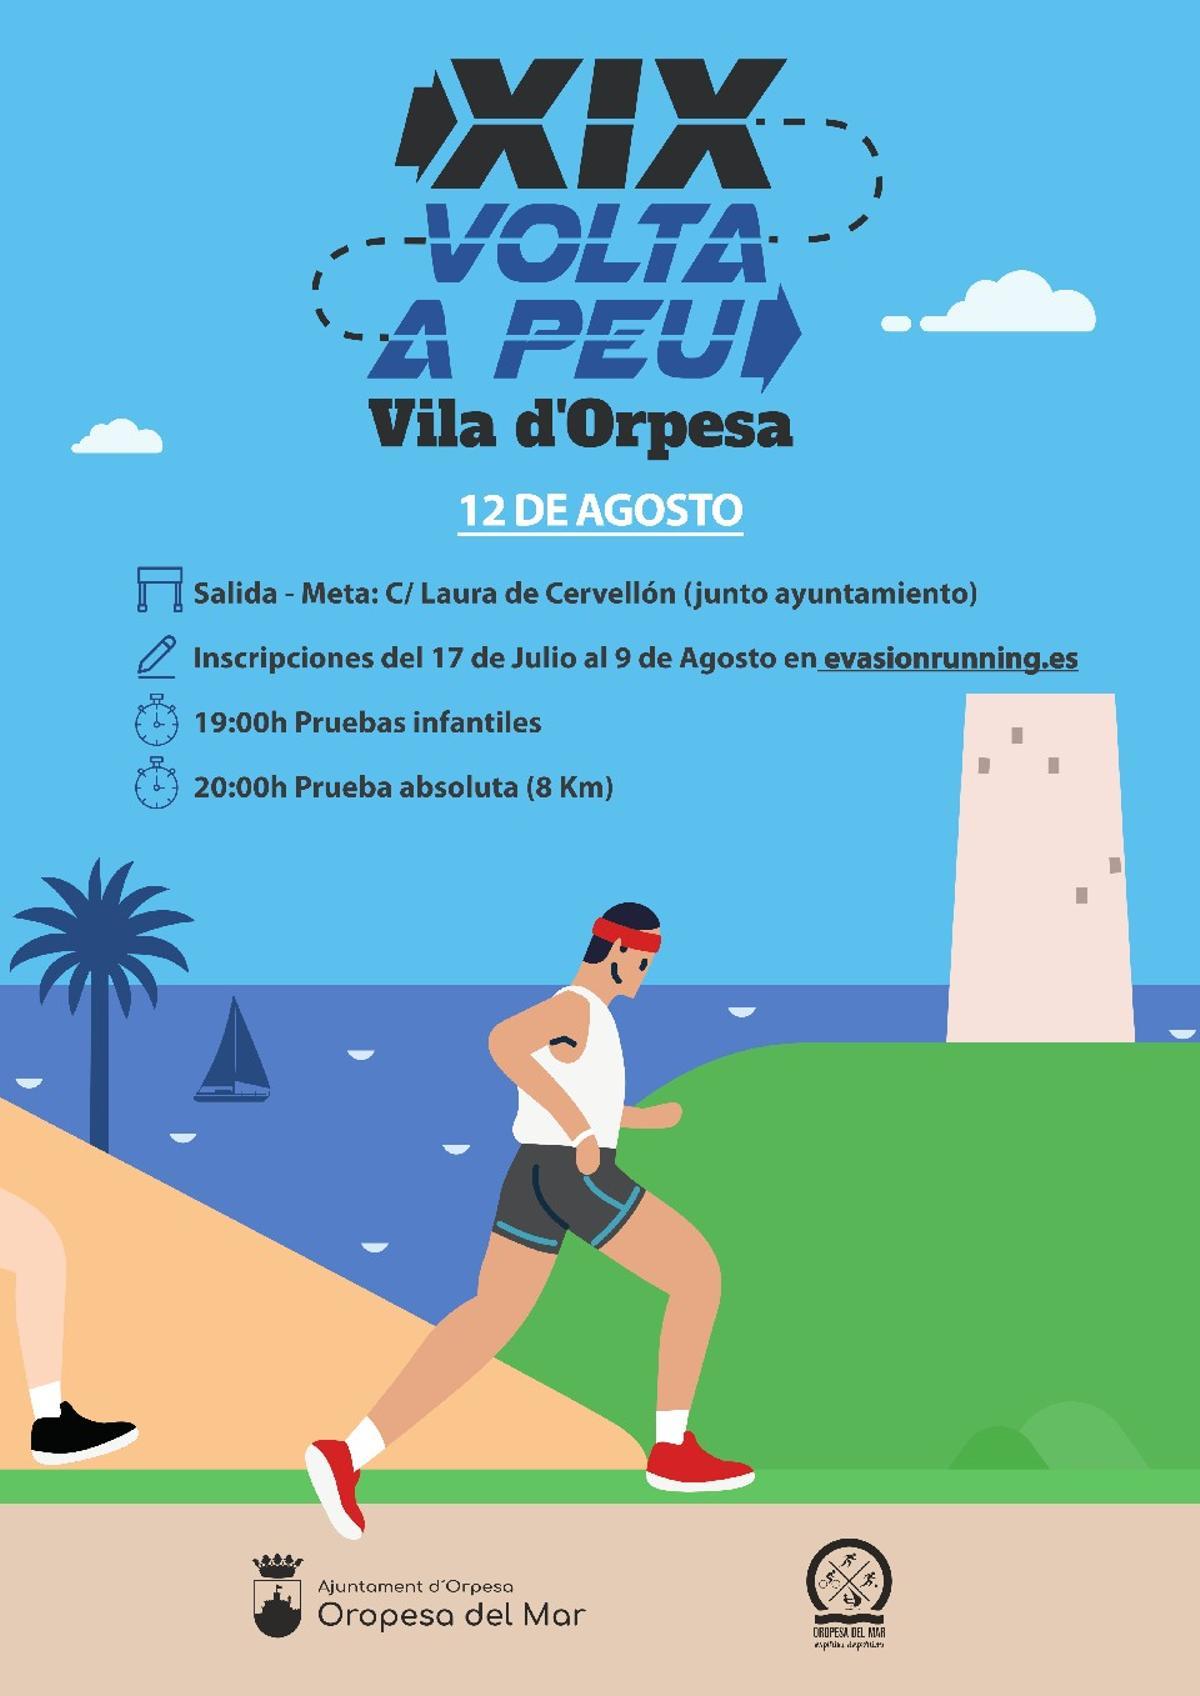 Cartel de la Volta a Peu Vila d'Orpesa.